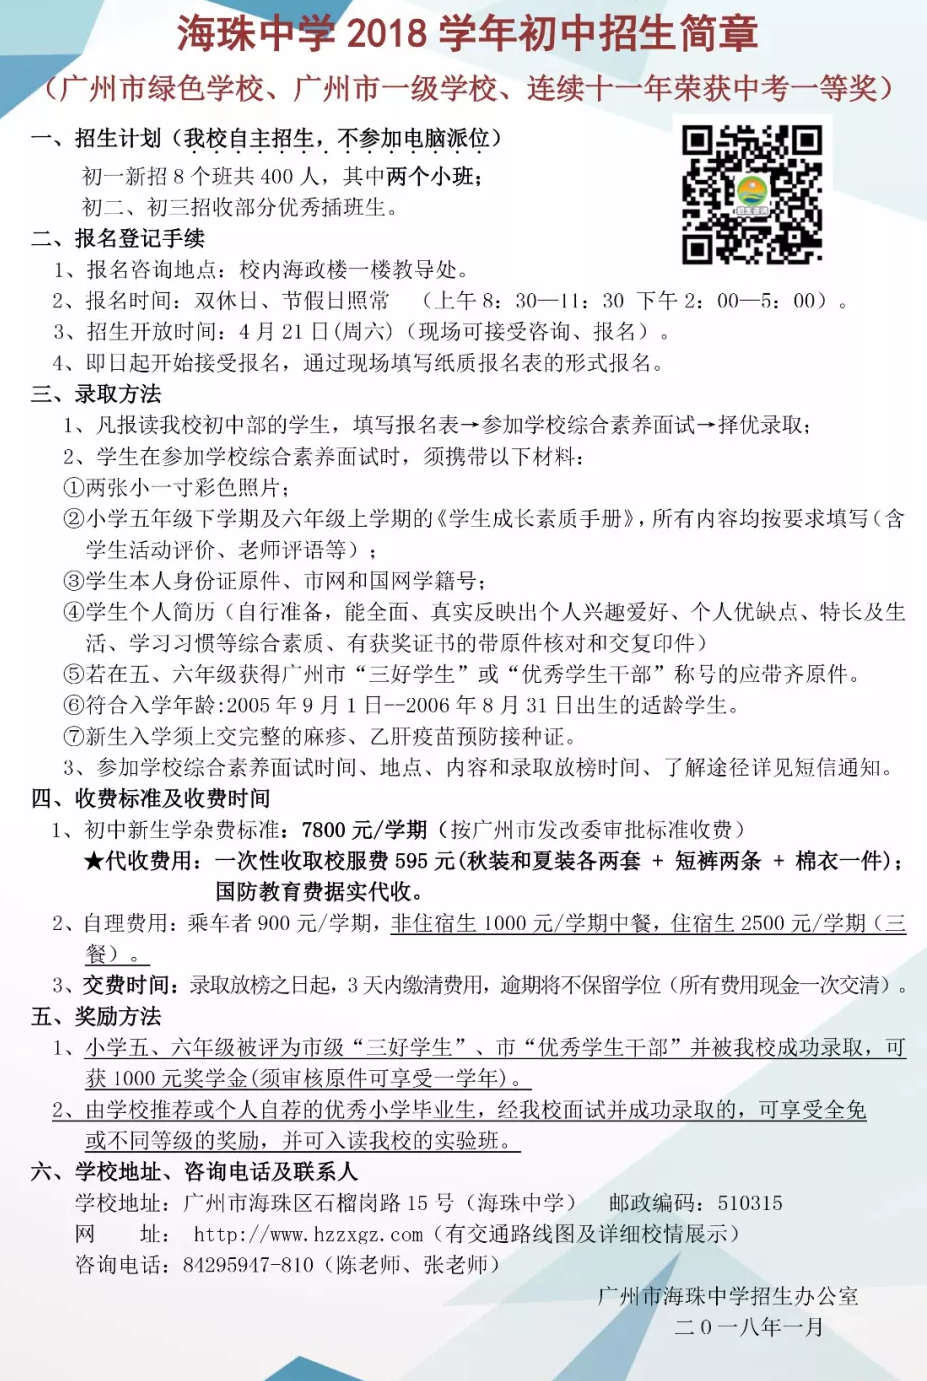 2018年广州珠海中学初中招生简章1